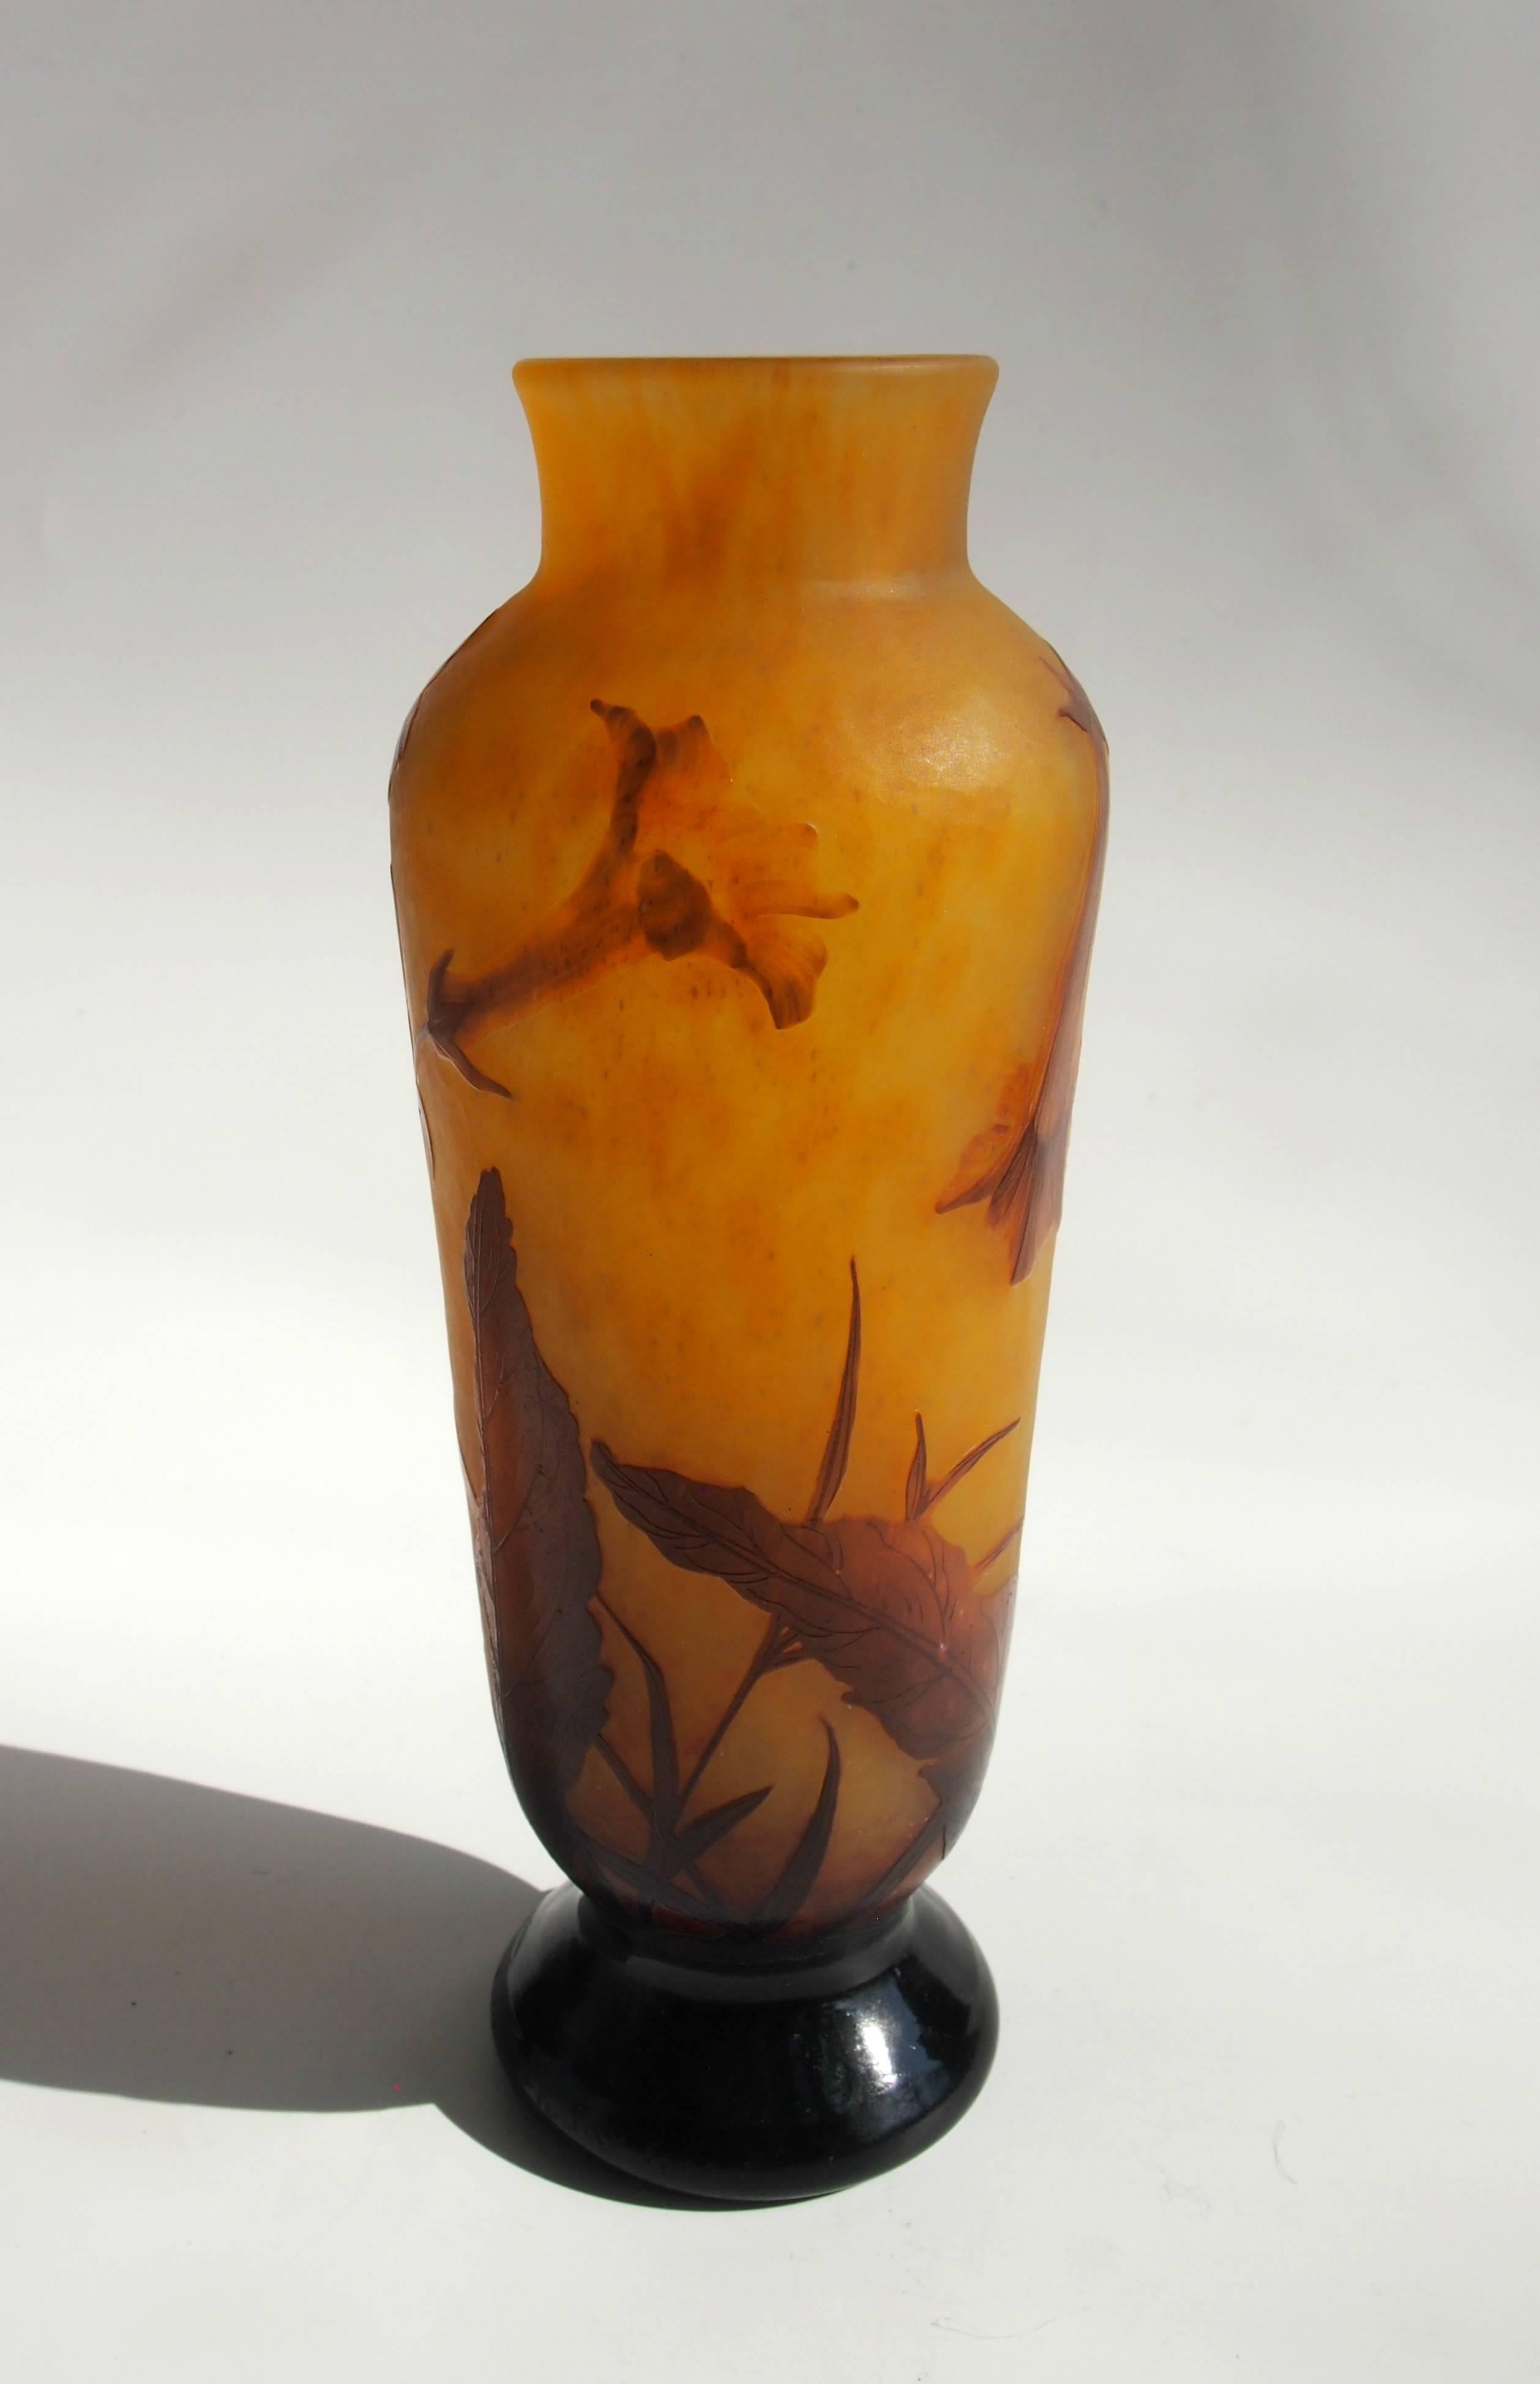 Vase Daum en camée classique et sculpté Art Nouveau représentant la plante en fleur Nicotiana (Tabac) dans un brun sur orange très inhabituel. Daum n'a utilisé la technique de sculpture que sur quelques vases - elle prenait beaucoup plus de temps